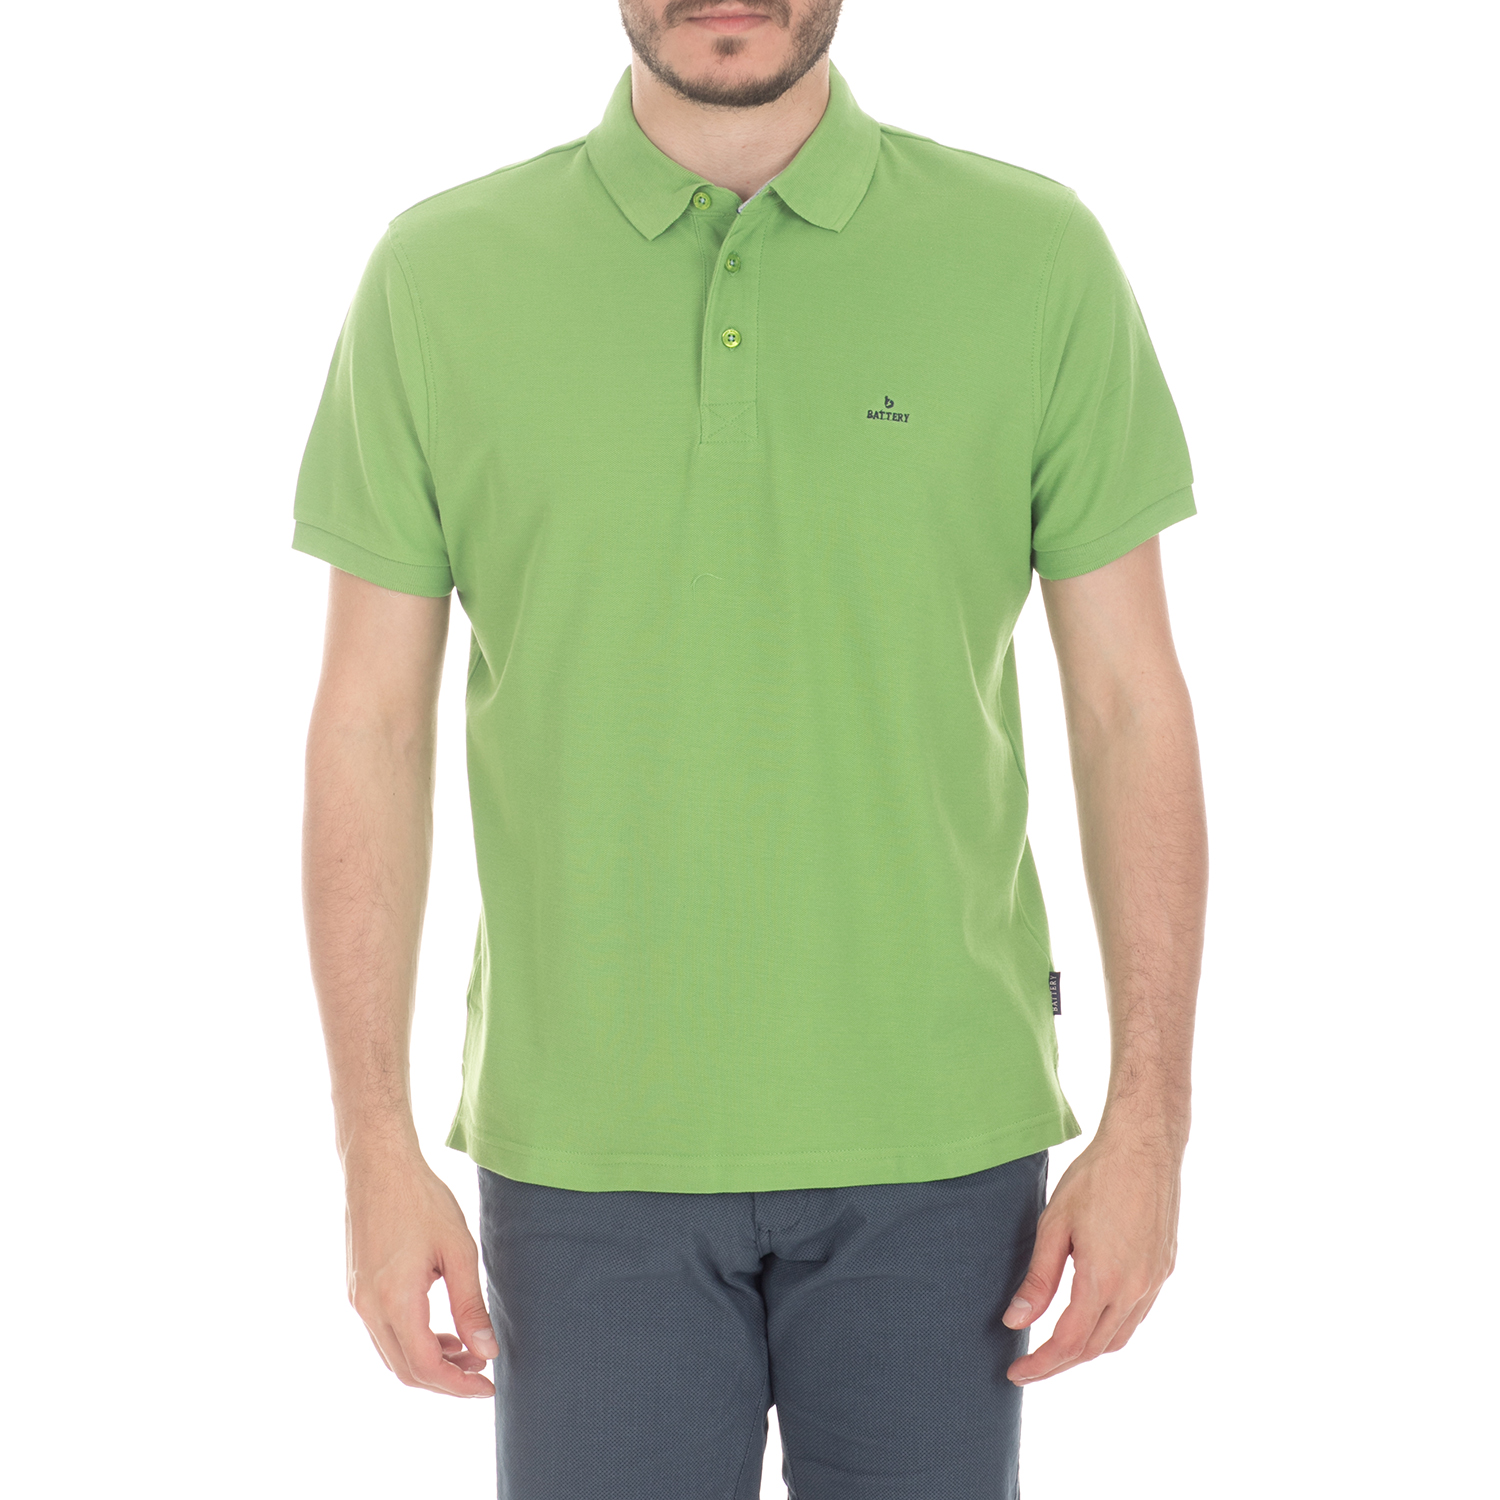 BATTERY - Ανδρική μπλούζα BATTERY πράσινη Ανδρικά/Ρούχα/Μπλούζες/Πόλο